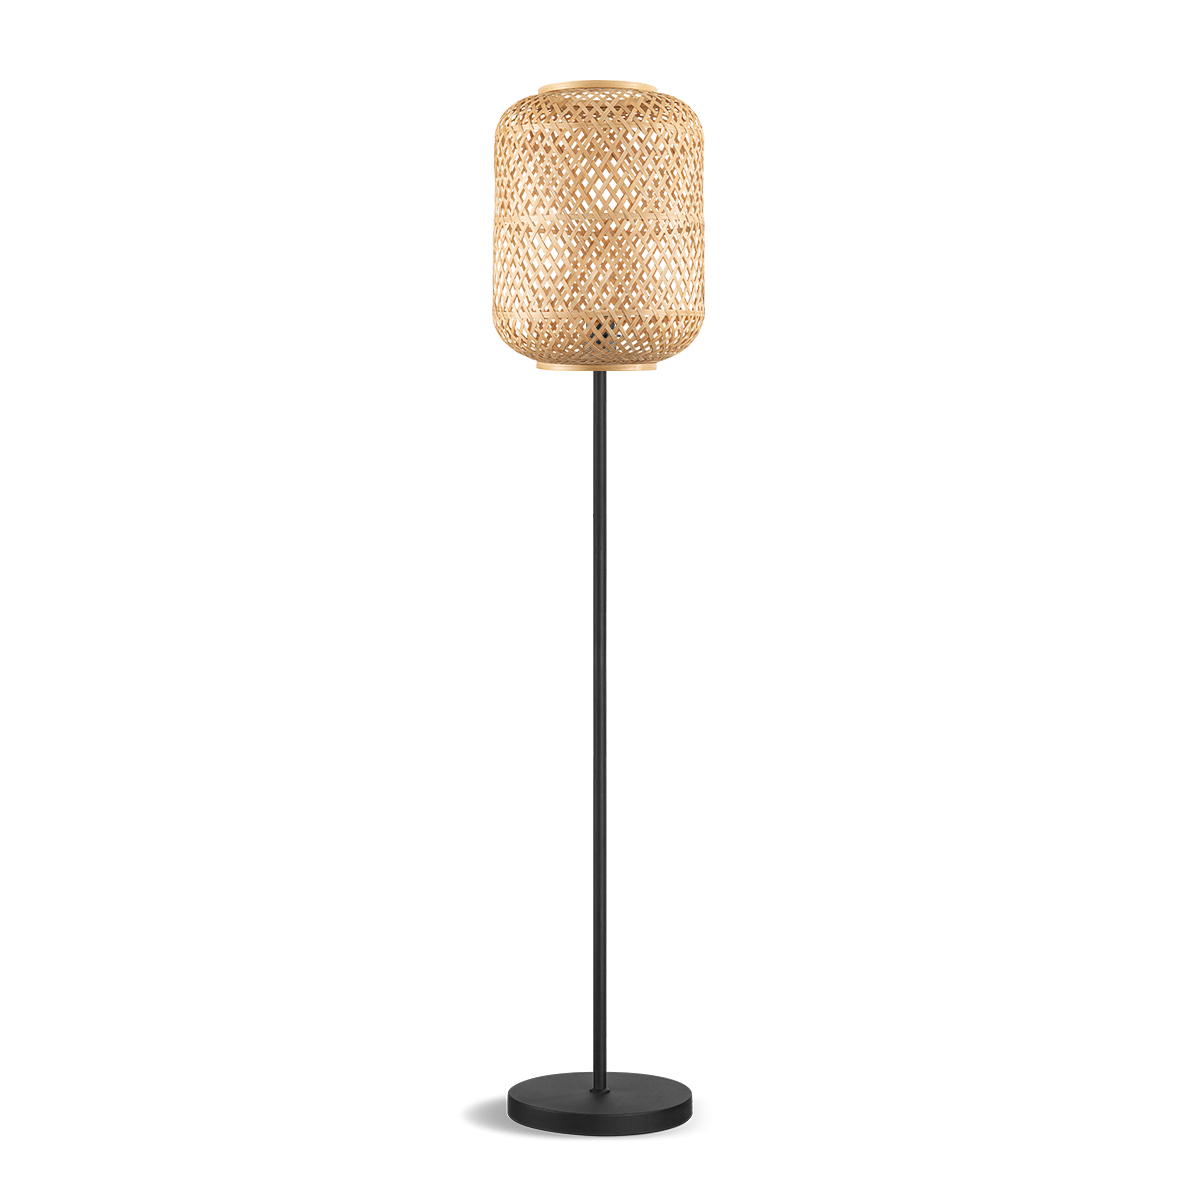 Tangla lighting - TLF7626-01LNT - LED Floor lamp 1 Light - bamboo - natural - bar - E27